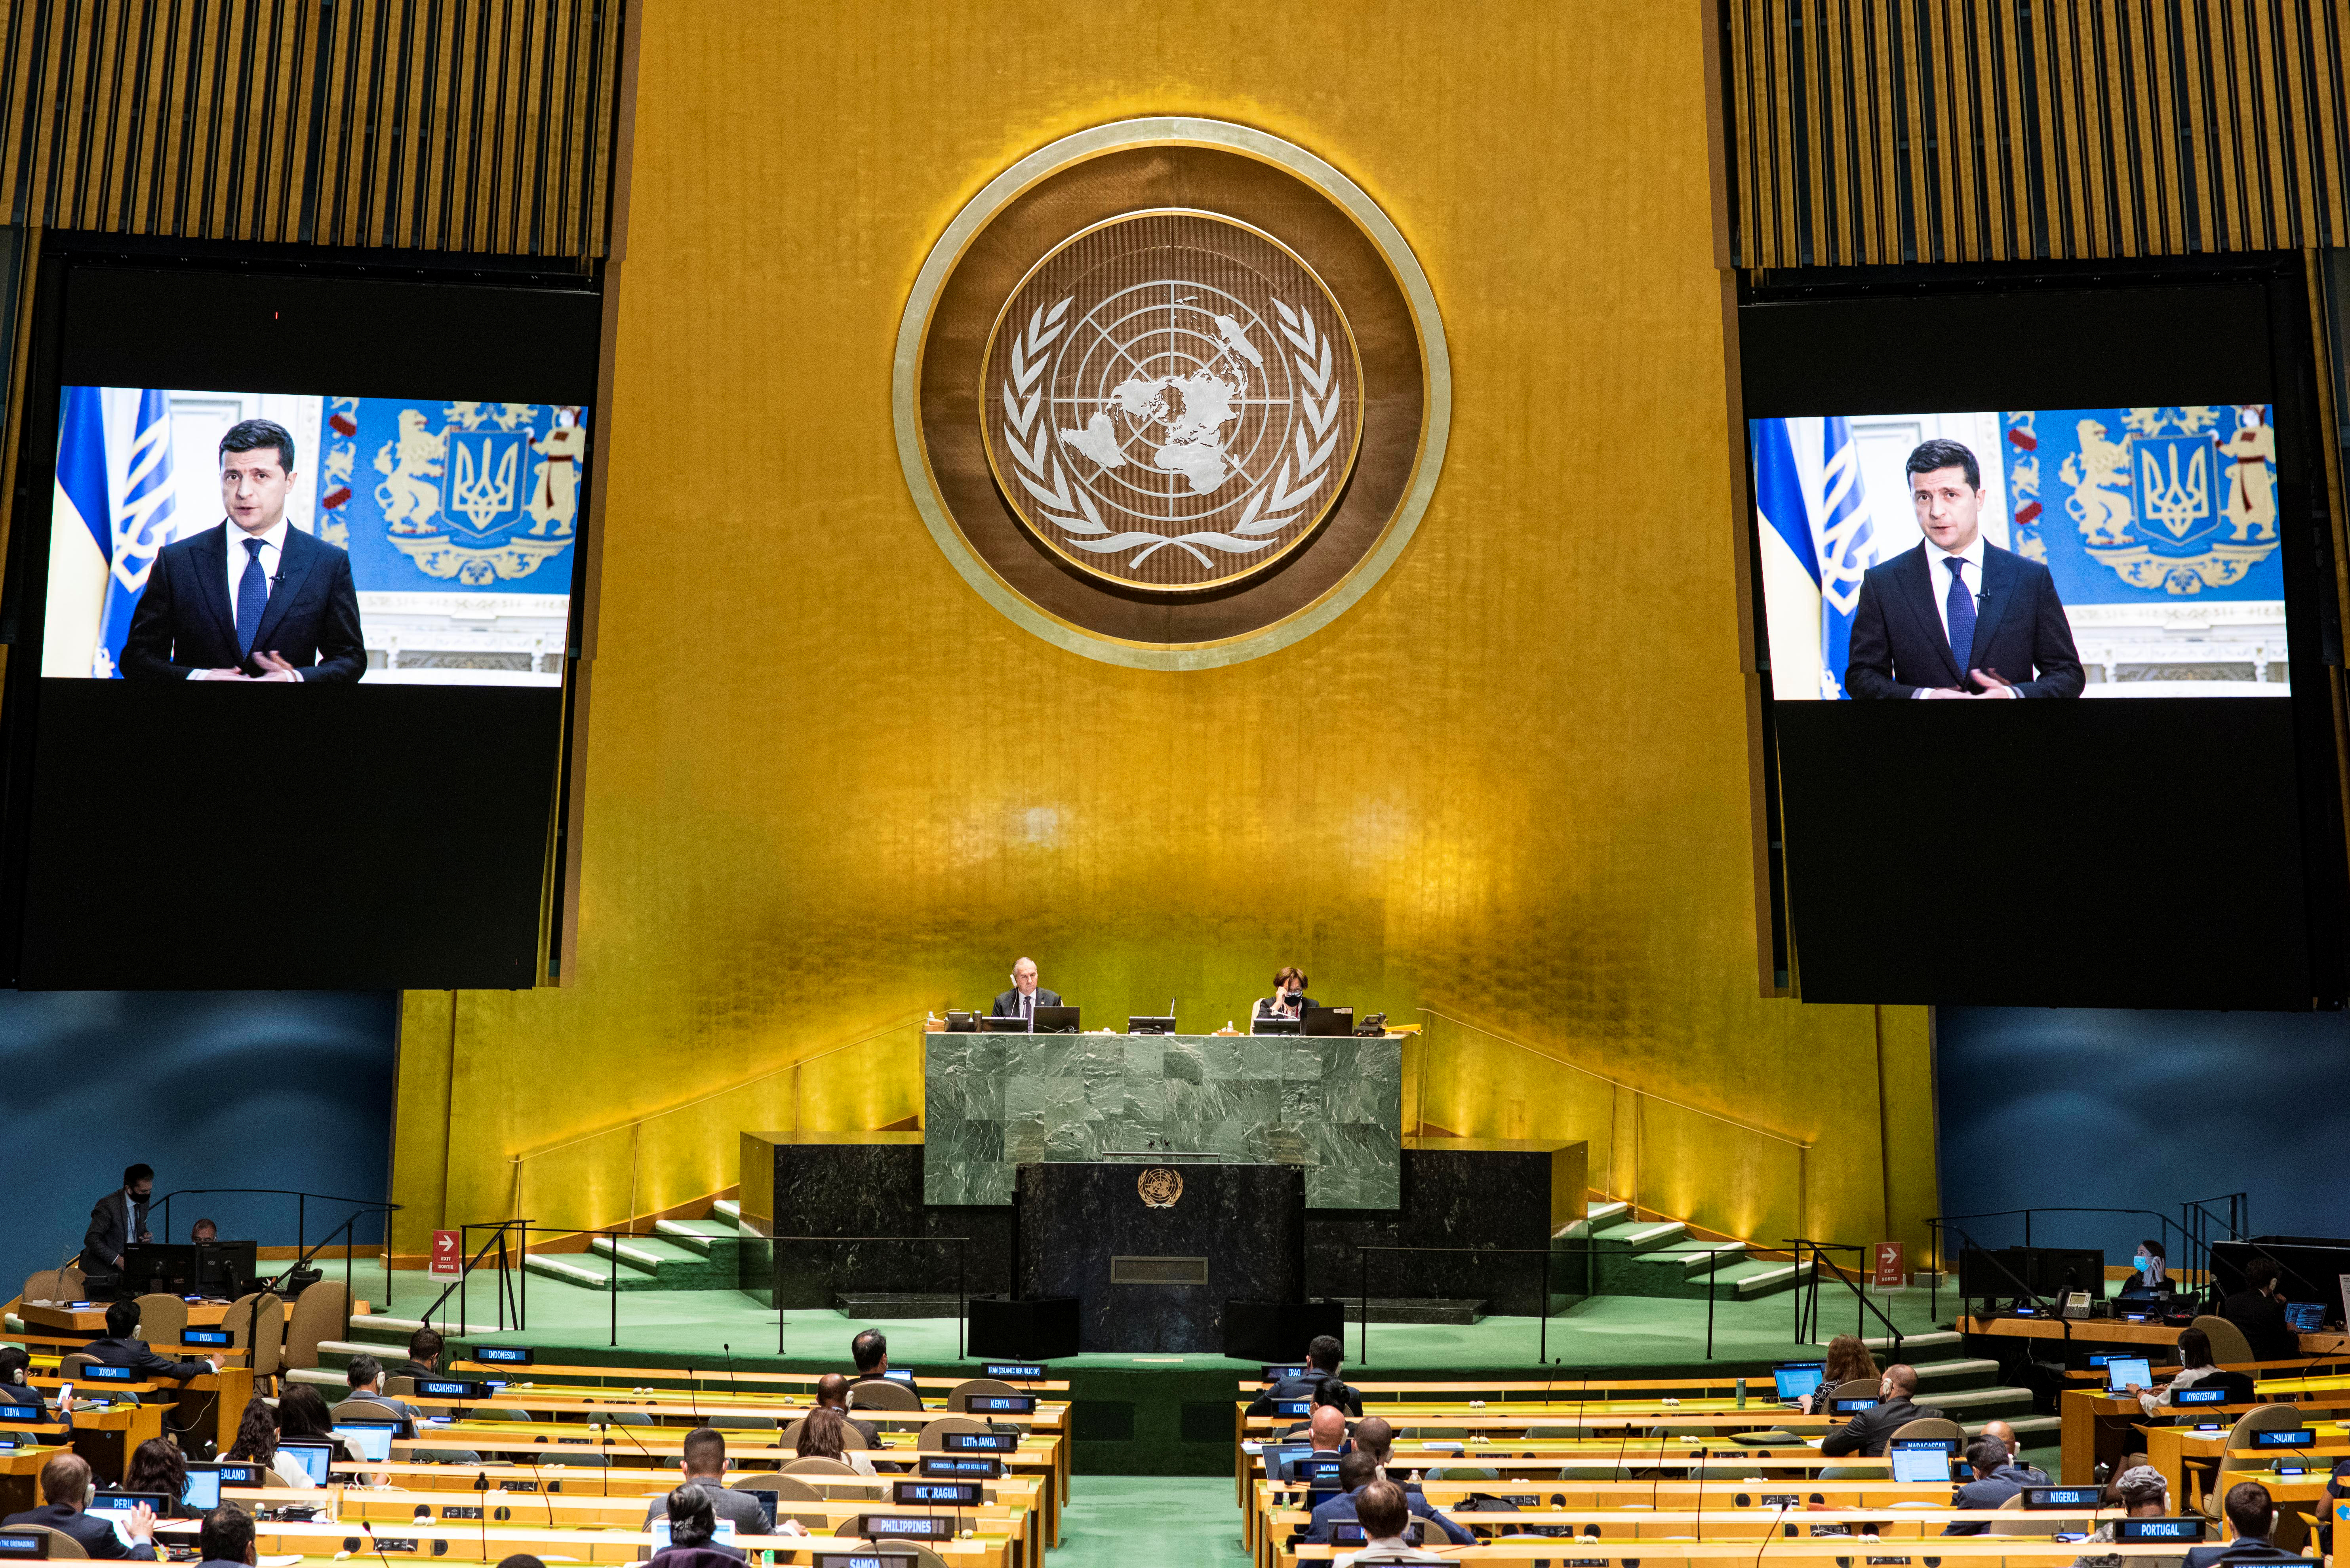 Зал оон. Генеральная Ассамблея ООН (организация Объединенных наций).. Зал Генеральной Ассамблеи ООН. Генассамблея ООН 2022. Зал заседания Генеральной Ассамблеи ООН.